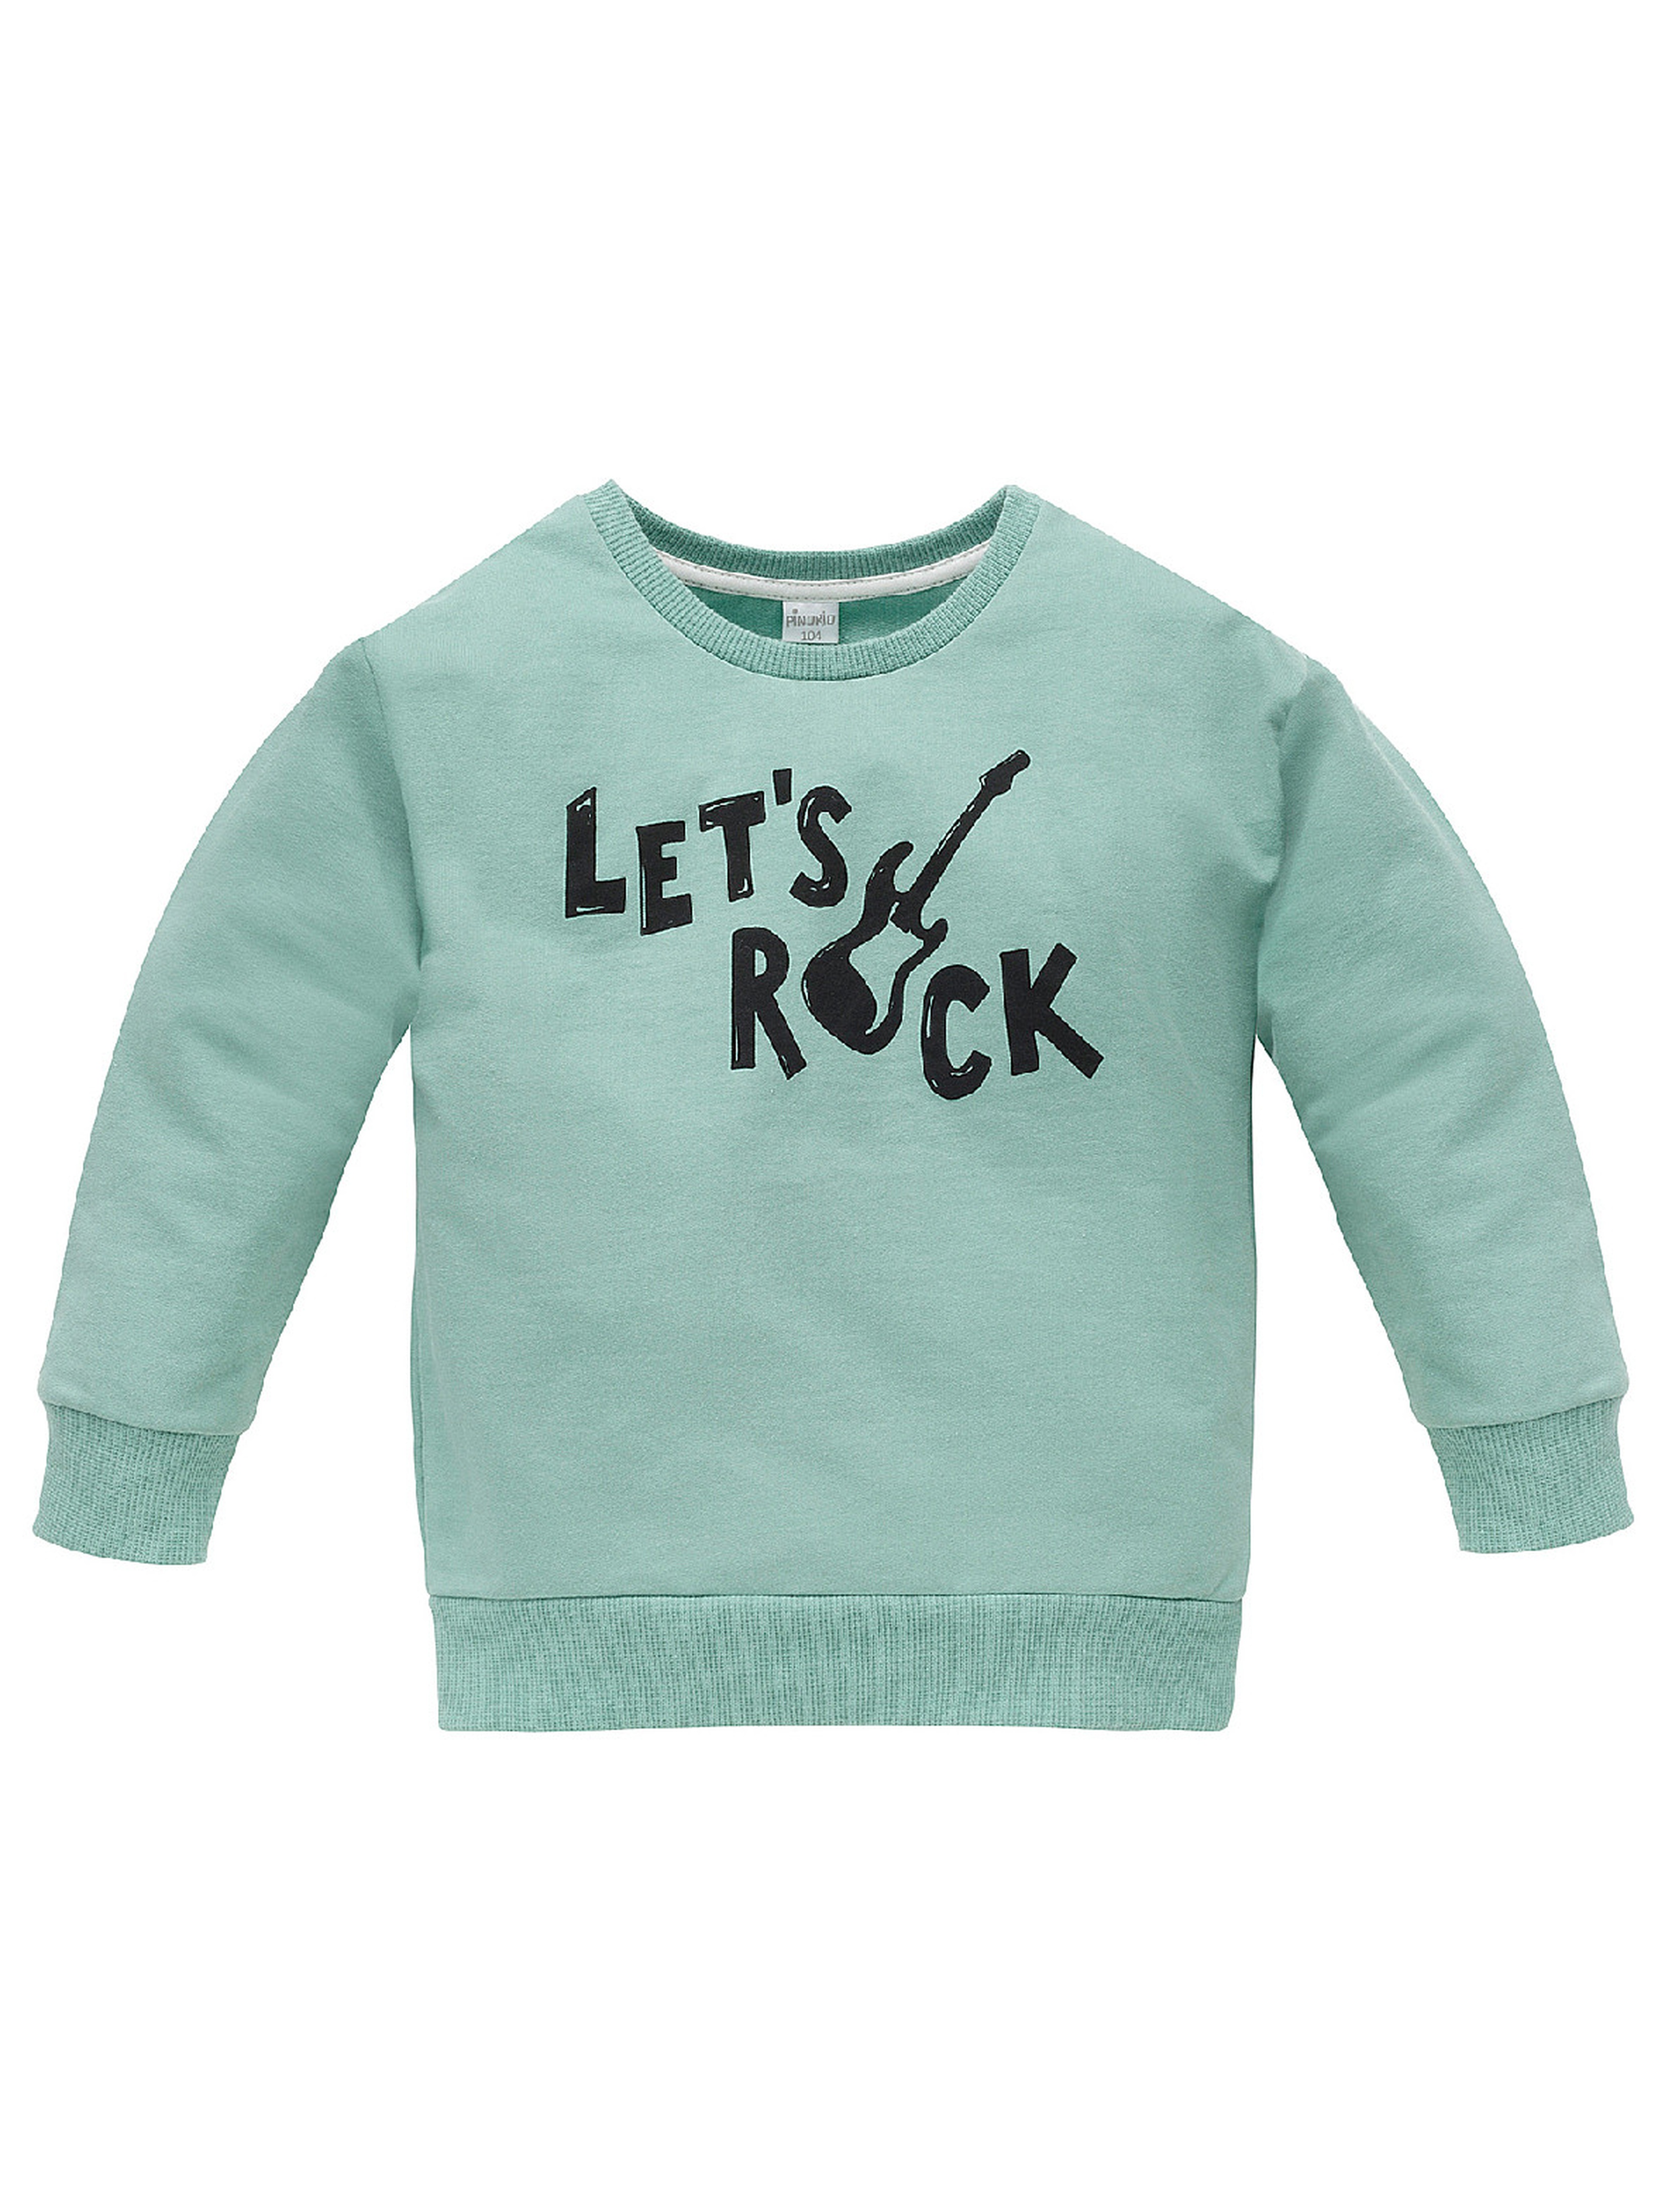 Bluza dla chłopca z bawełny Let's rock zielona